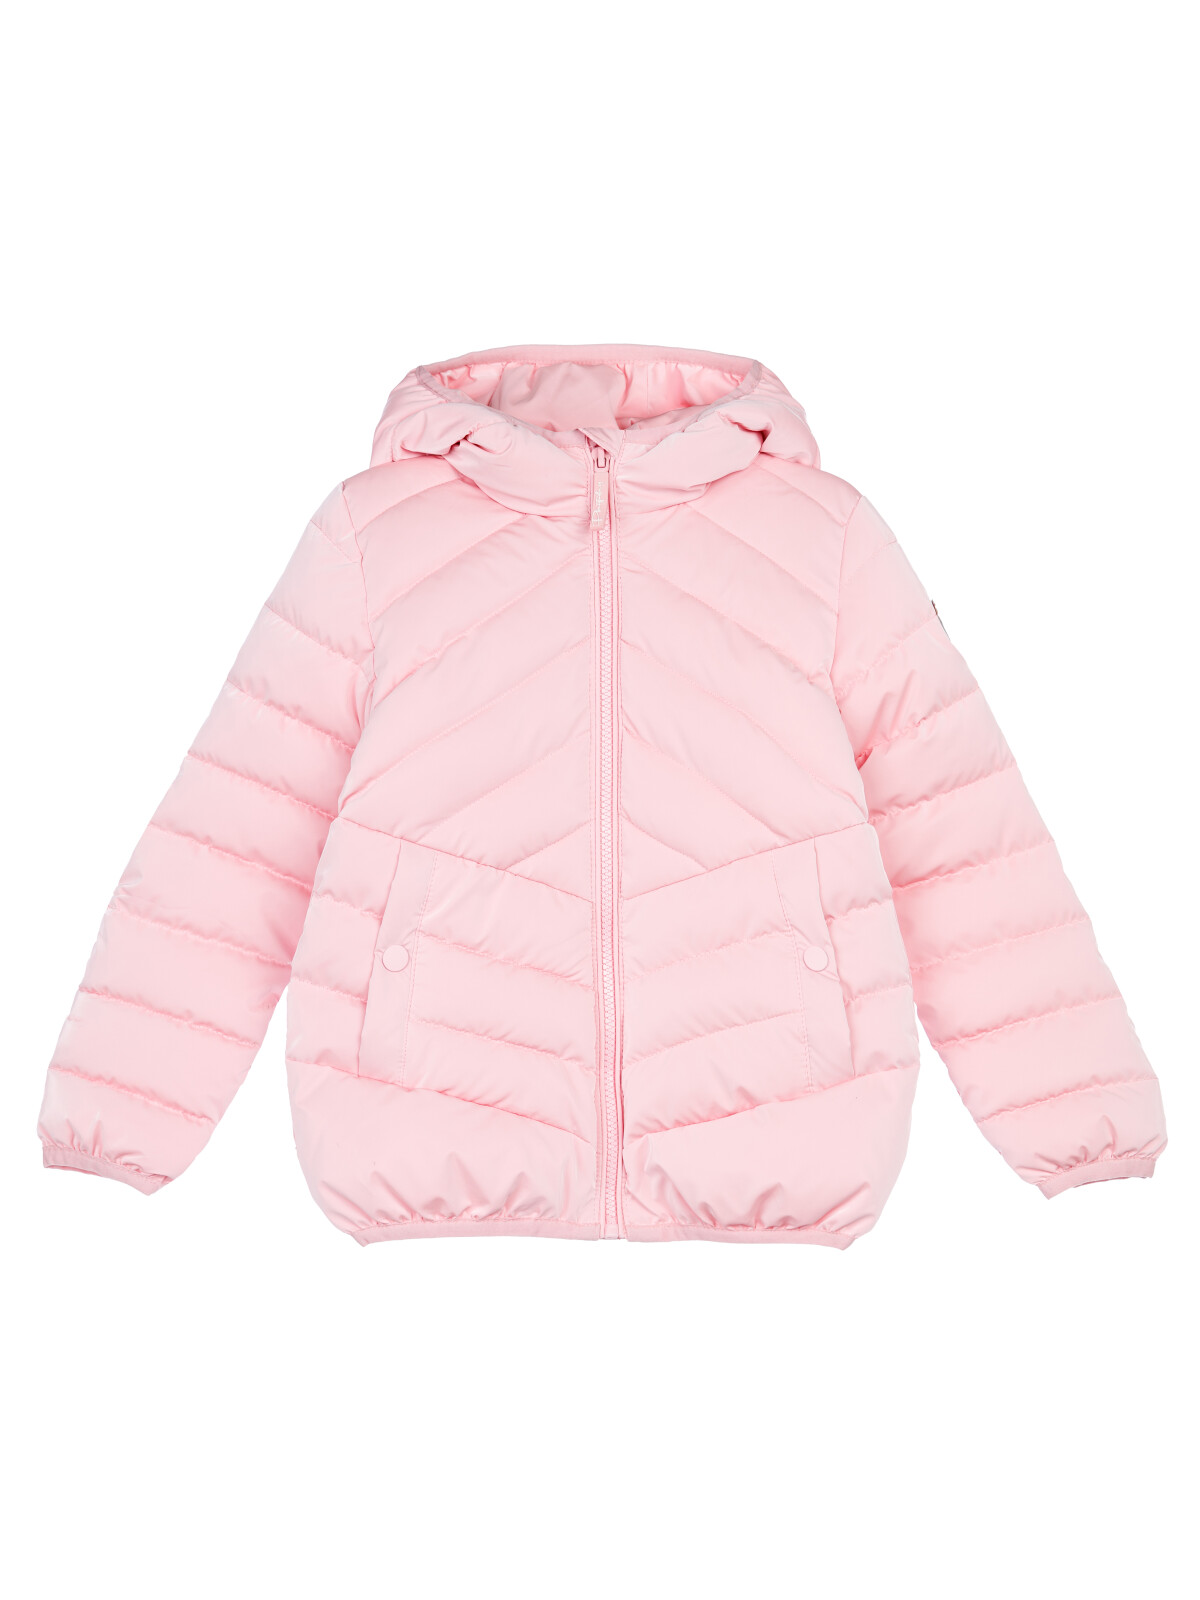 Куртка детская PlayToday 12422001, светло-розовый, 98